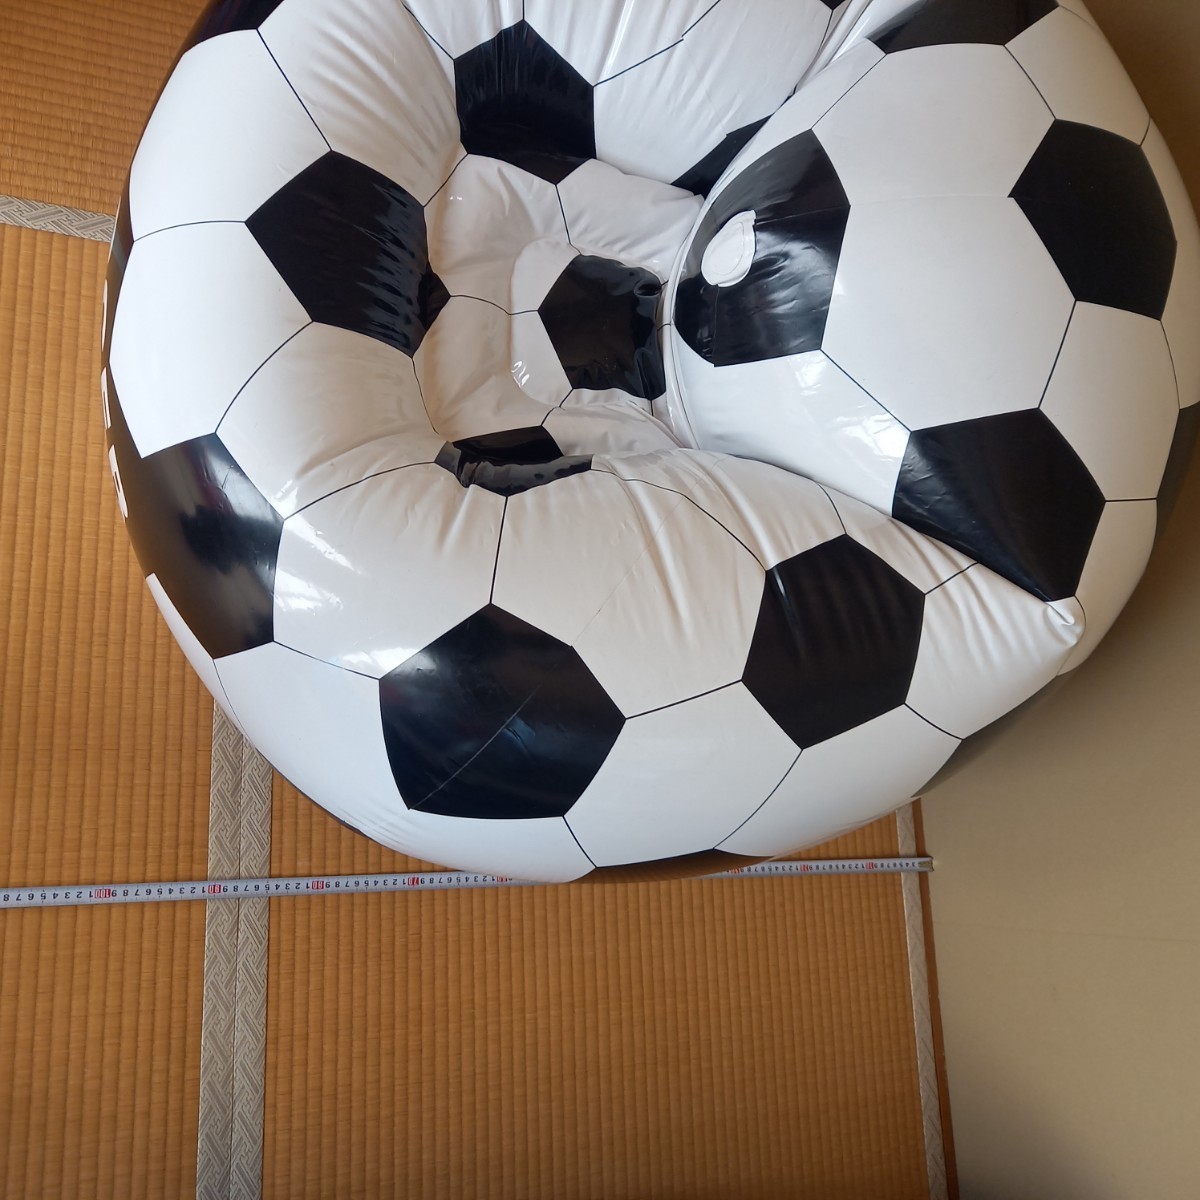  футбольный мяч type воздушный диван воздушный стул б/у утиль 100×100×70cm надувной круг плавучие средства 